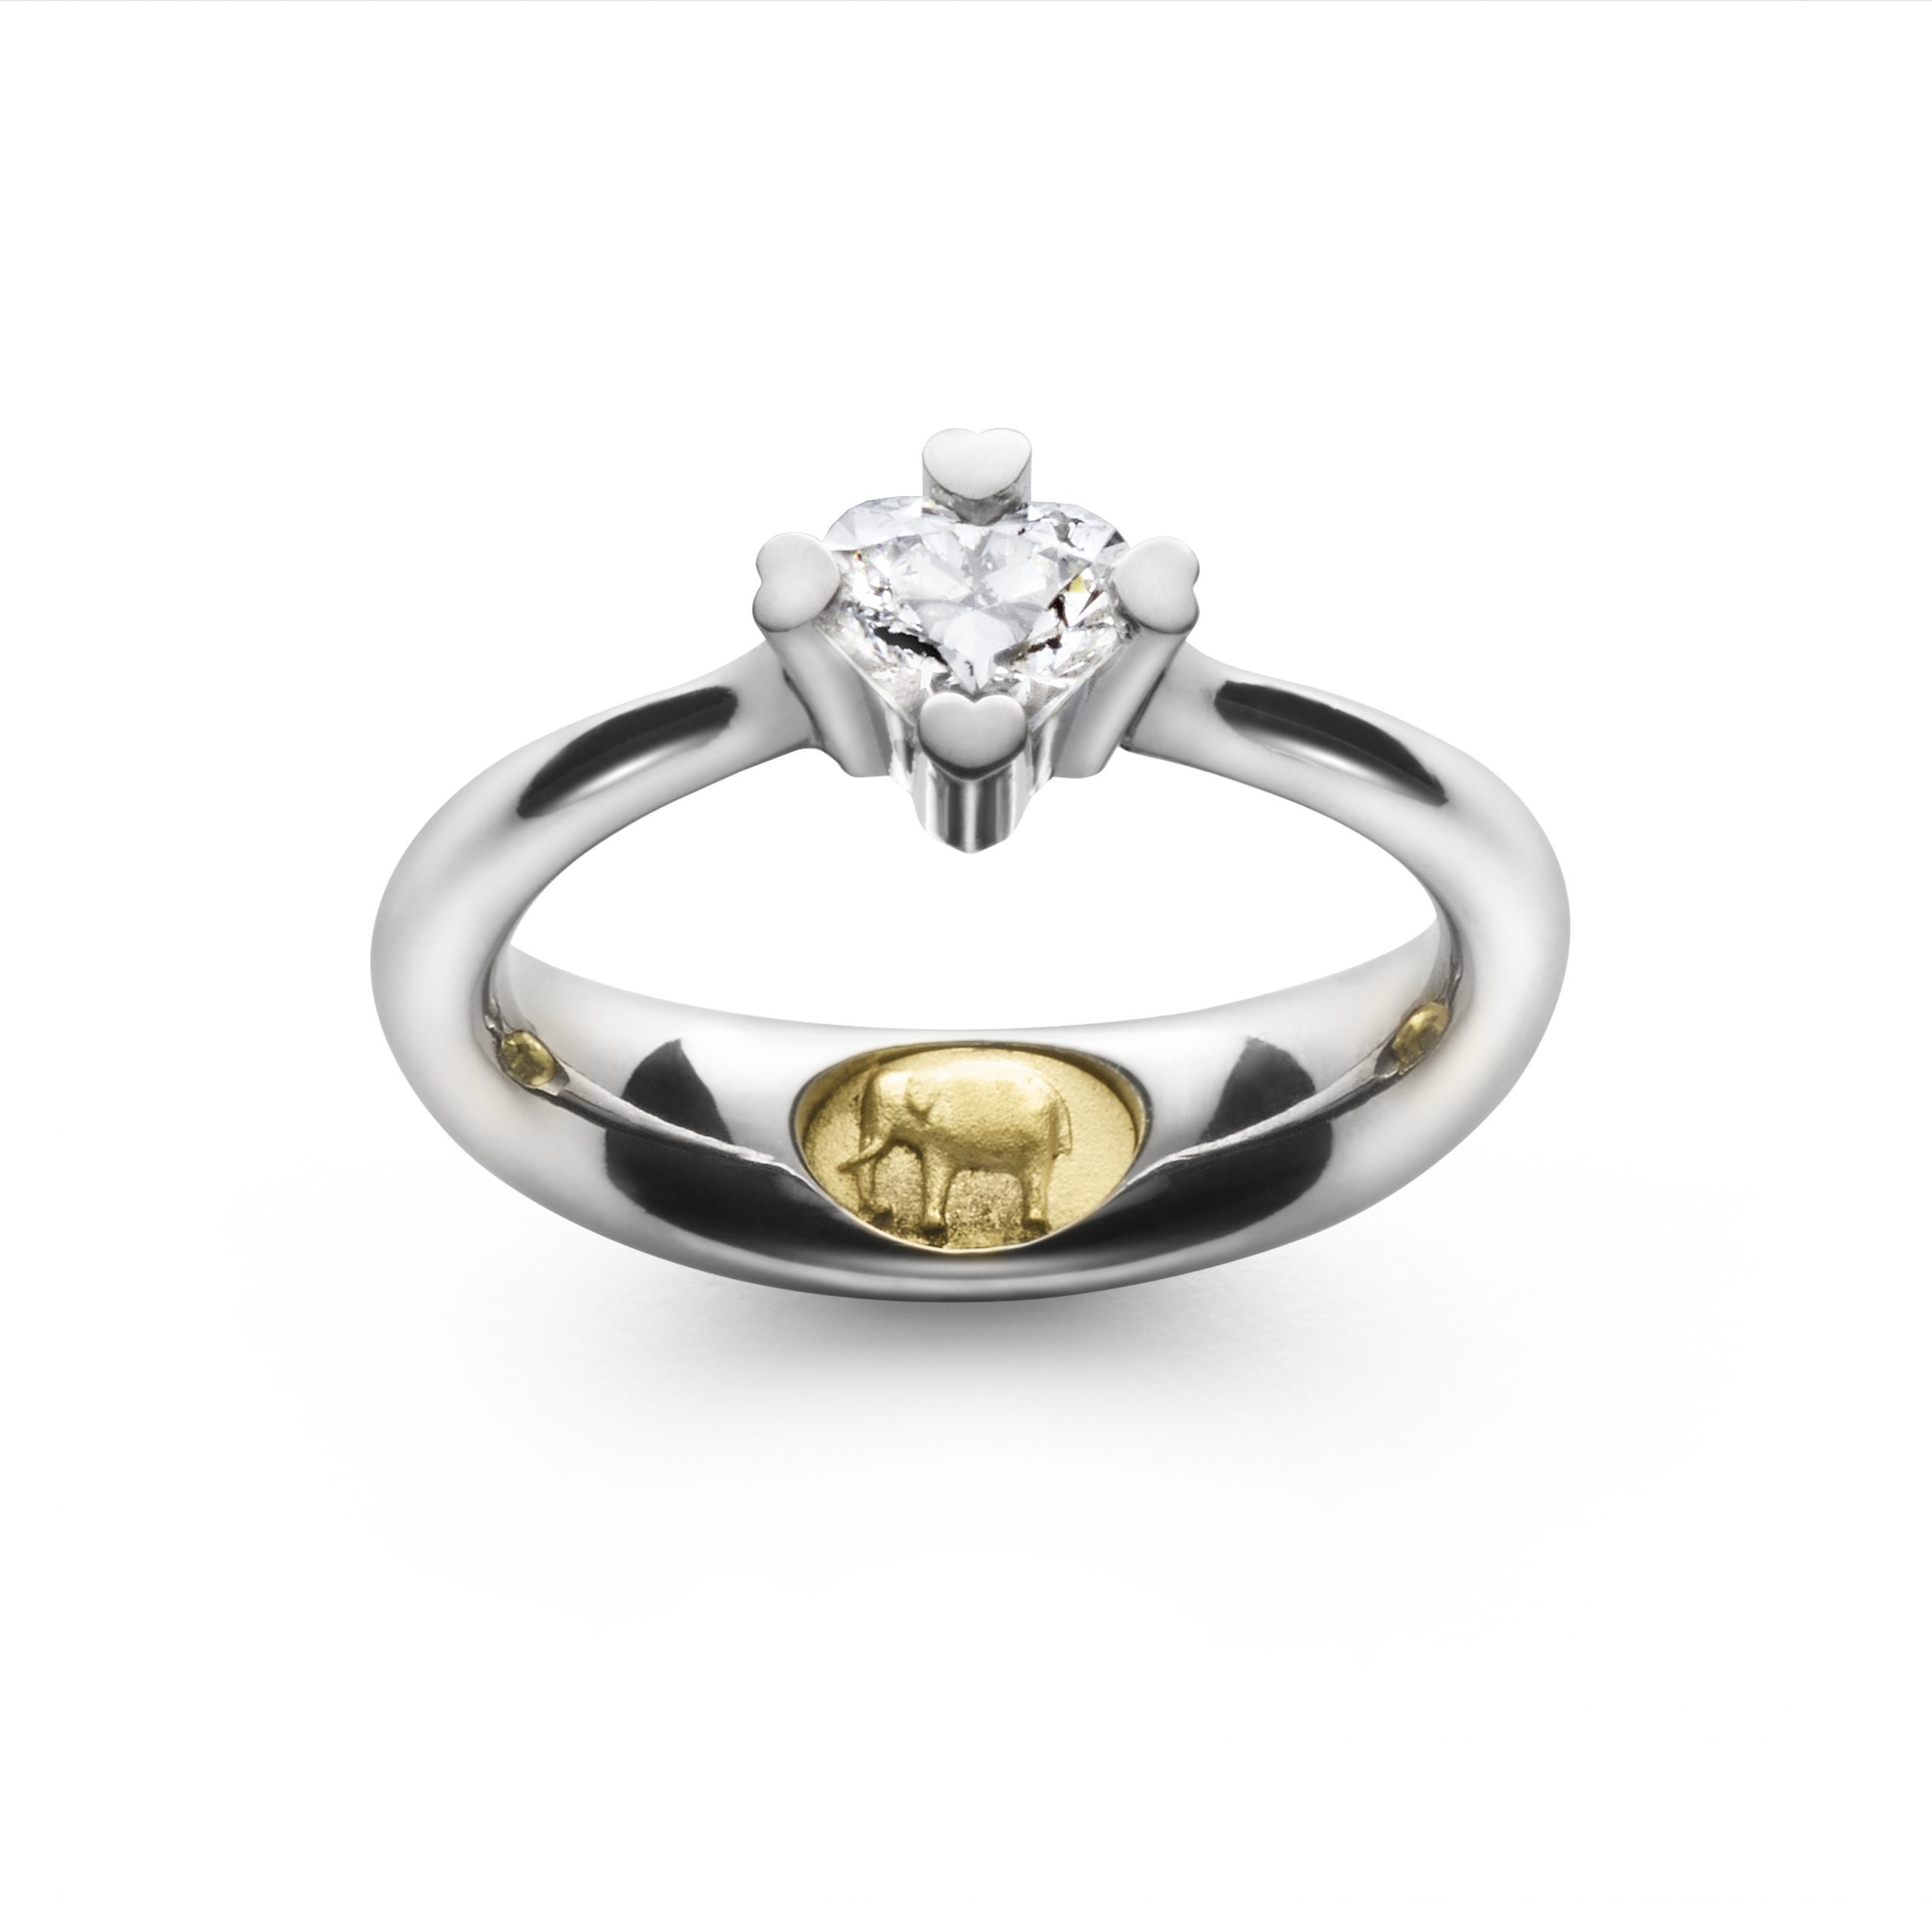 Unik forlovelsesring i platin med hjerteformet diamant og indlæg af elefant i guld - Guldsmed Ragnar R. Jørgensen